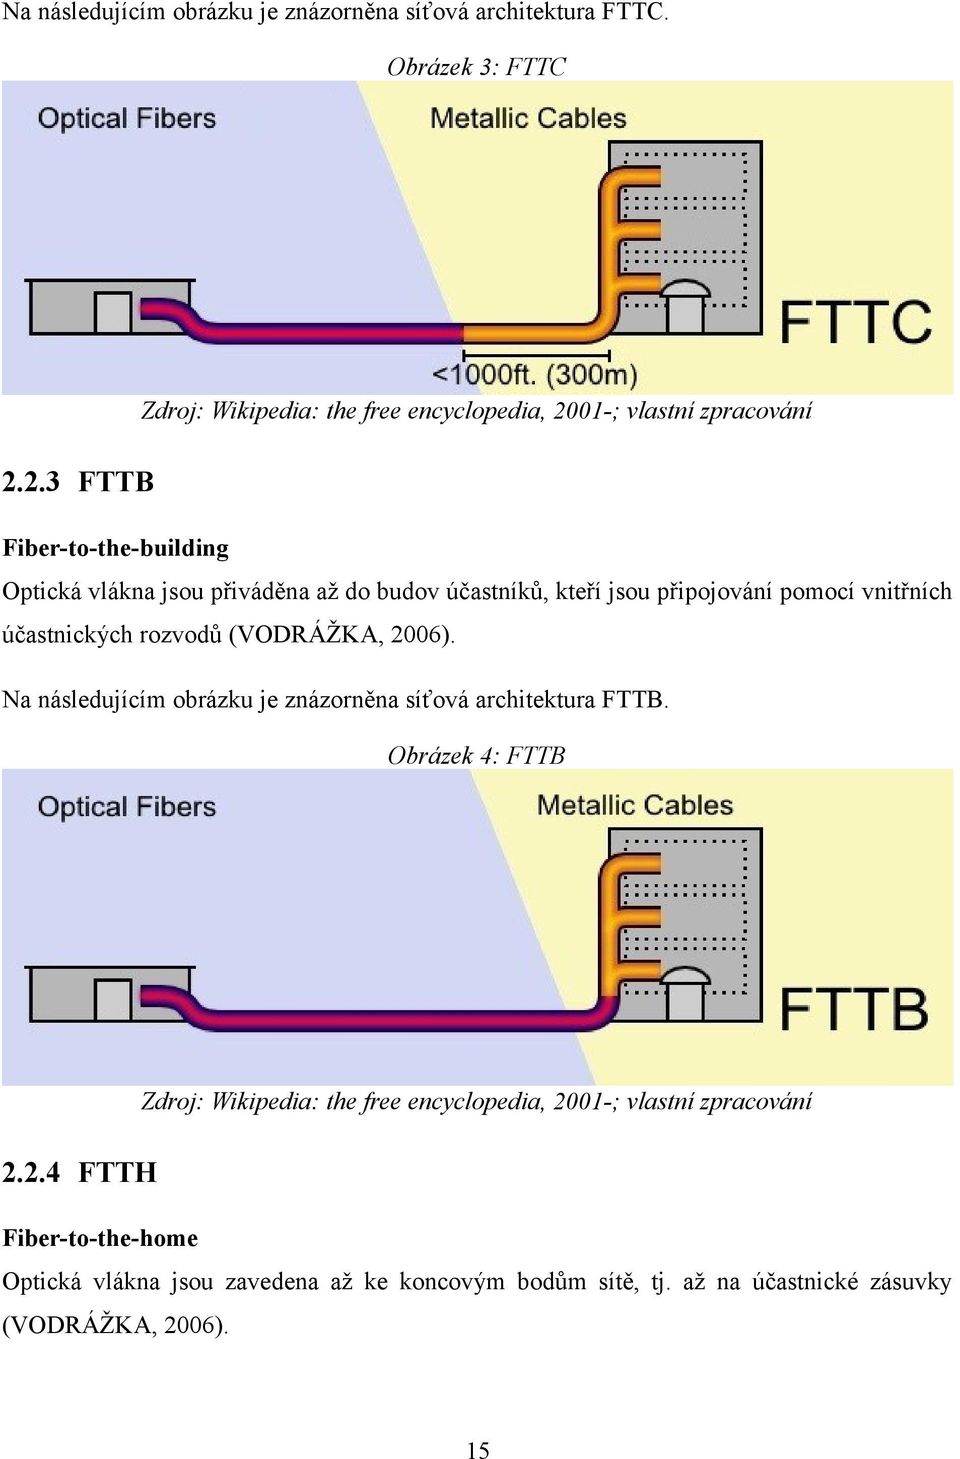 (VODRÁŽKA, 2006). Na následujícím obrázku je znázorněna síťová architektura FTTB.